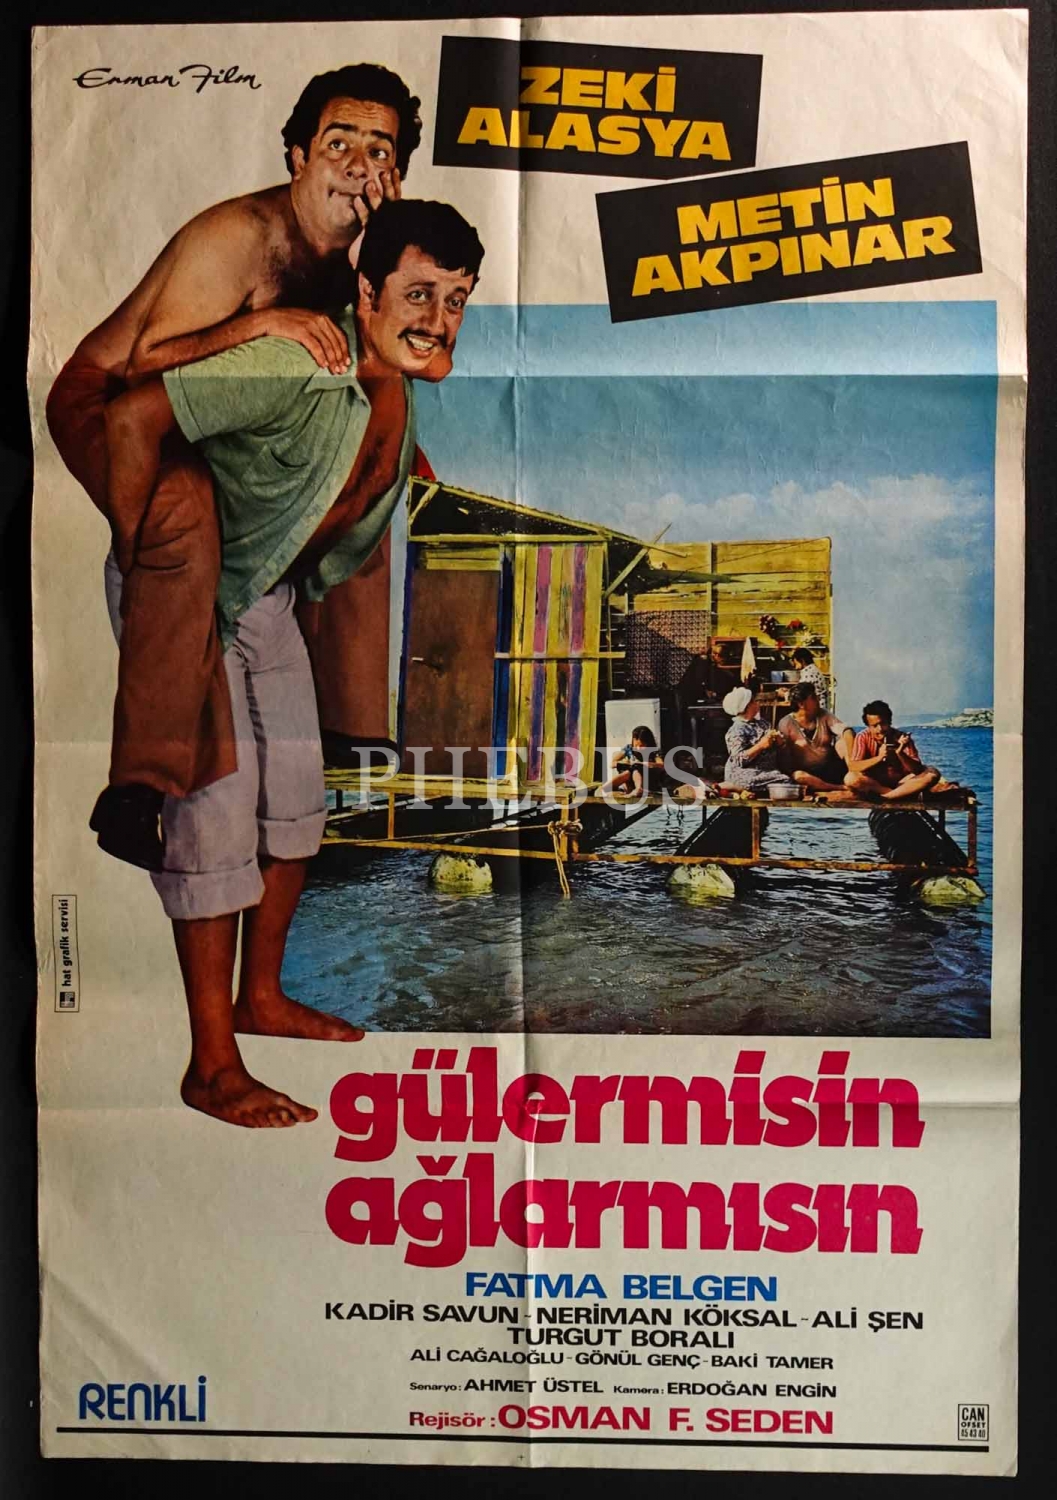 GÜLERMİSİN AĞLARMISIN, Zeki Alasya & Metin Akpınar, Erman Film, Hat Grafik Servisi & Can Ofset, 68x100